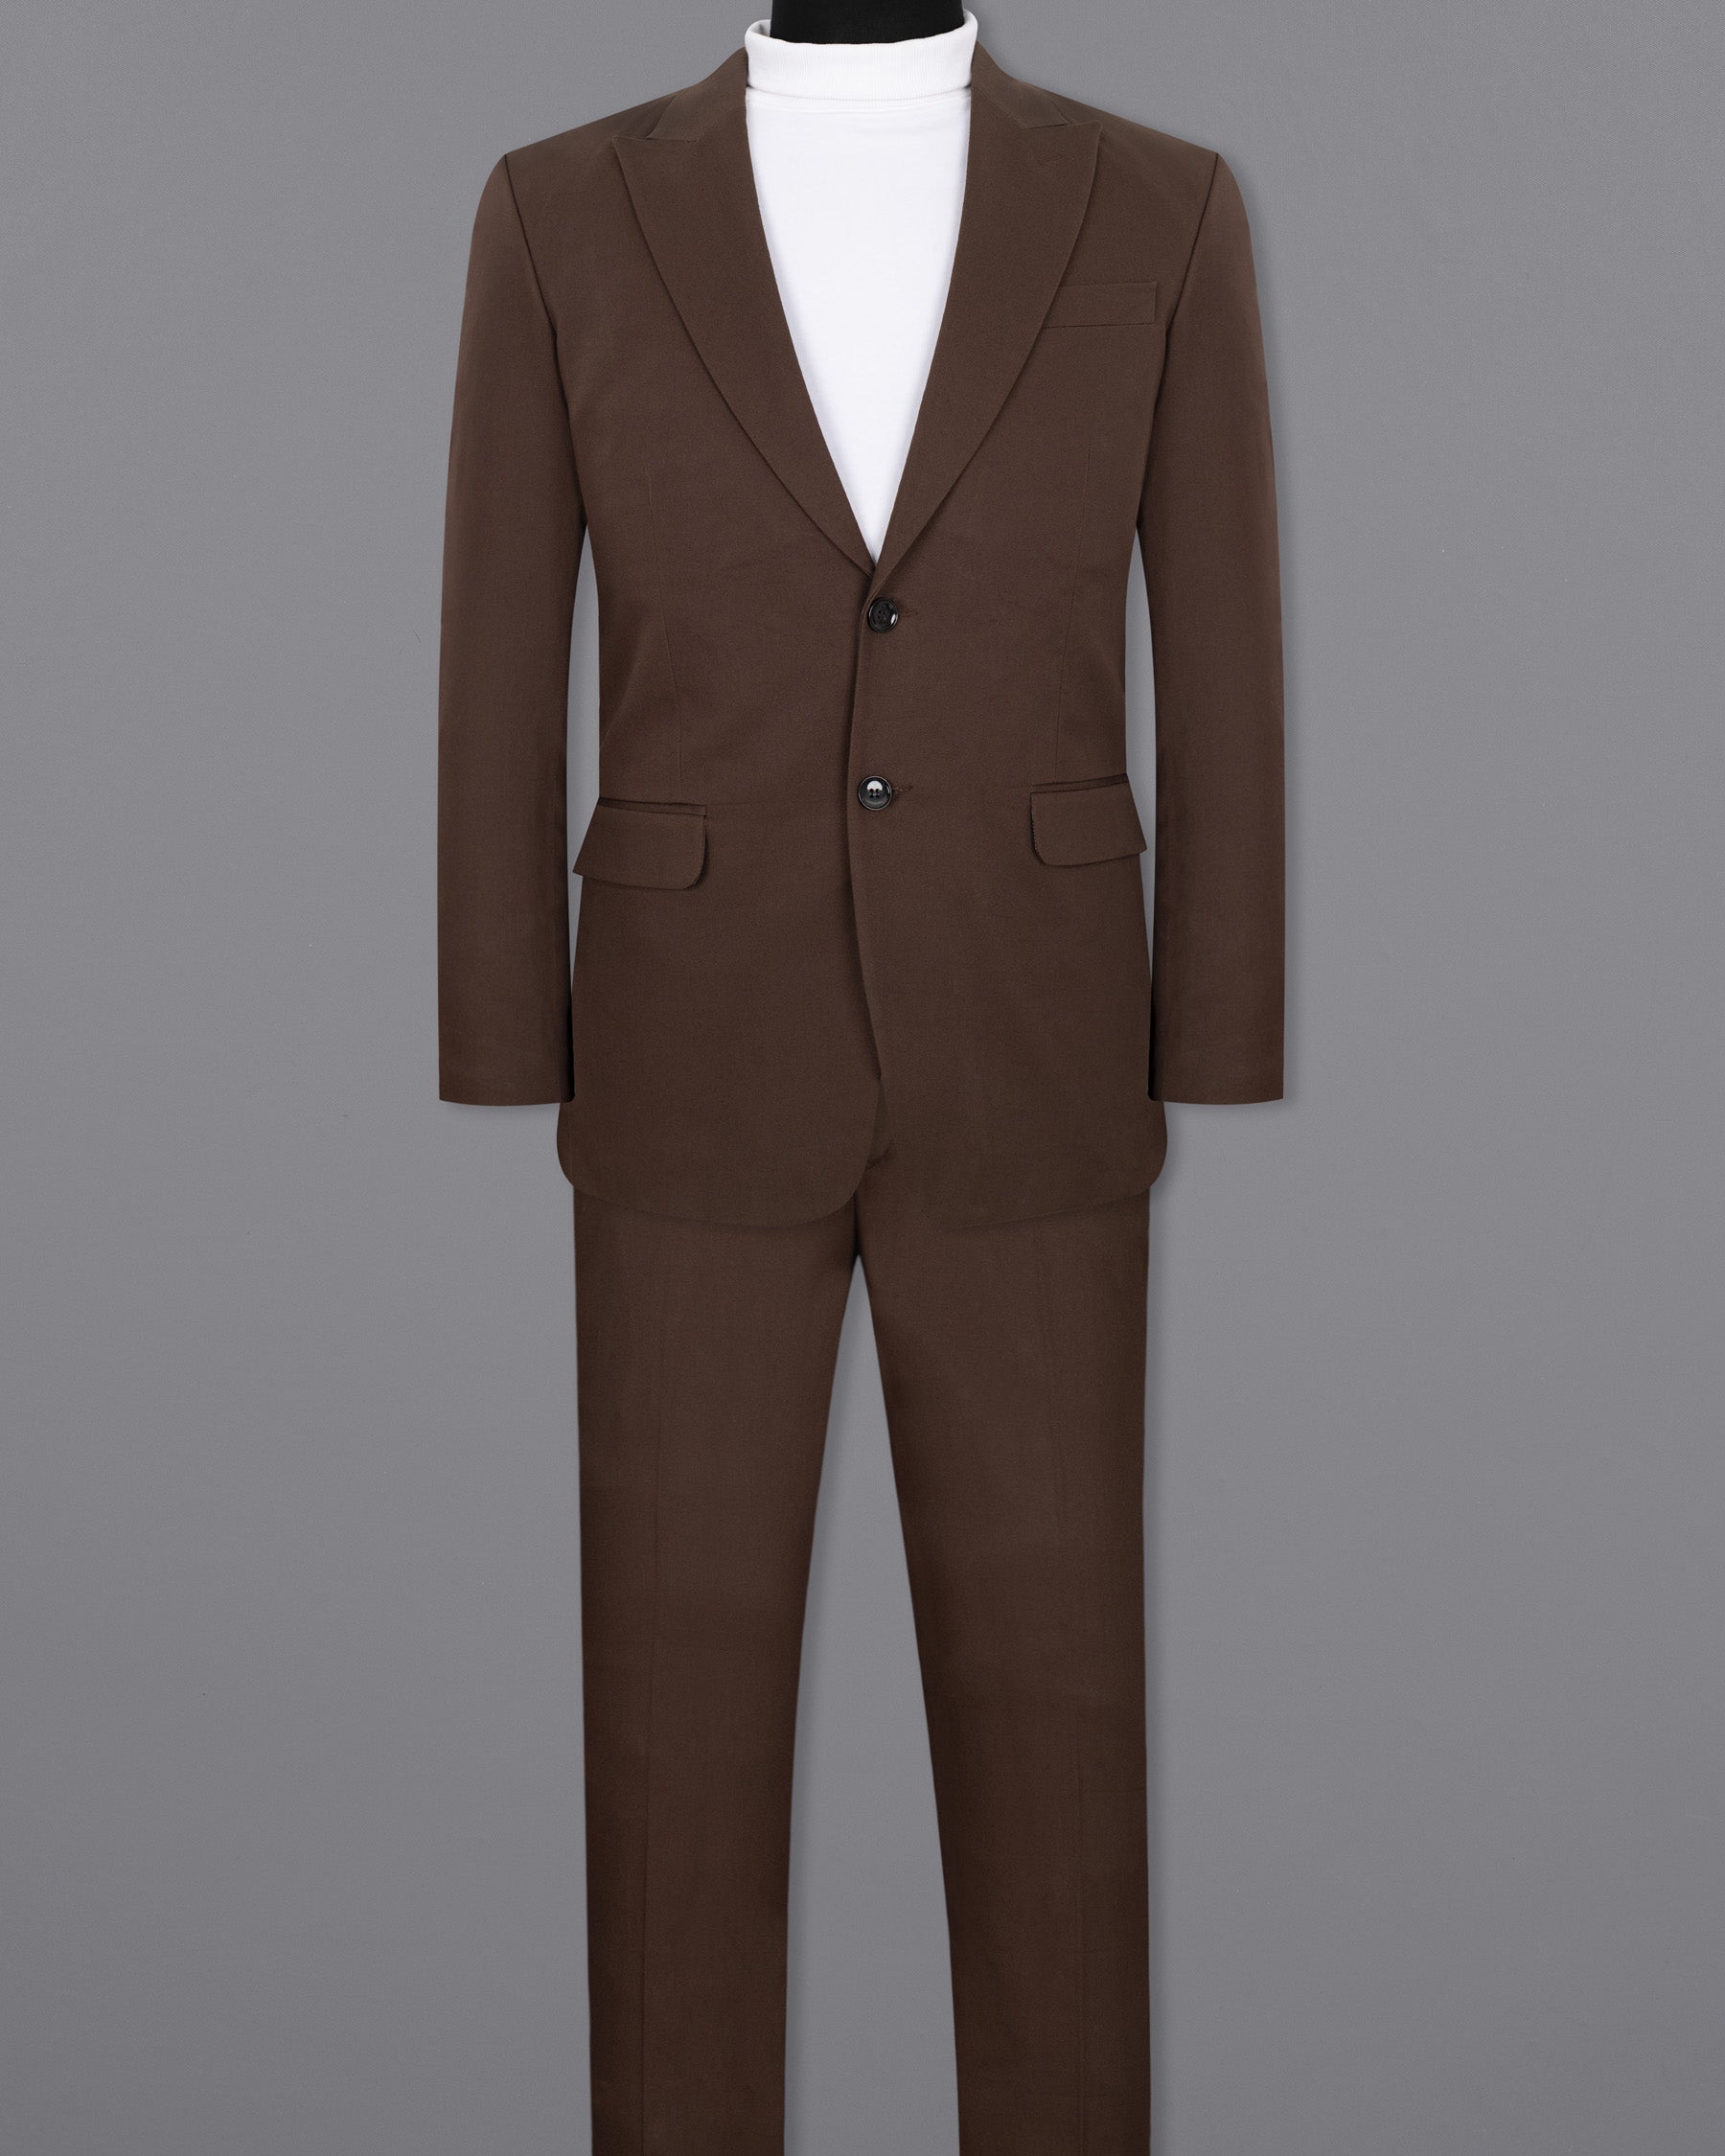 Paco Brown Premium Cotton Suit ST1320-SBP-36, ST1320-SBP-38, ST1320-SBP-40, ST1320-SBP-42, ST1320-SBP-44, ST1320-SBP-46, ST1320-SBP-48, ST1320-SBP-50, ST1320-SBP-52, ST1320-SBP-54, ST1320-SBP-56, ST1320-SBP-58, ST1320-SBP-60